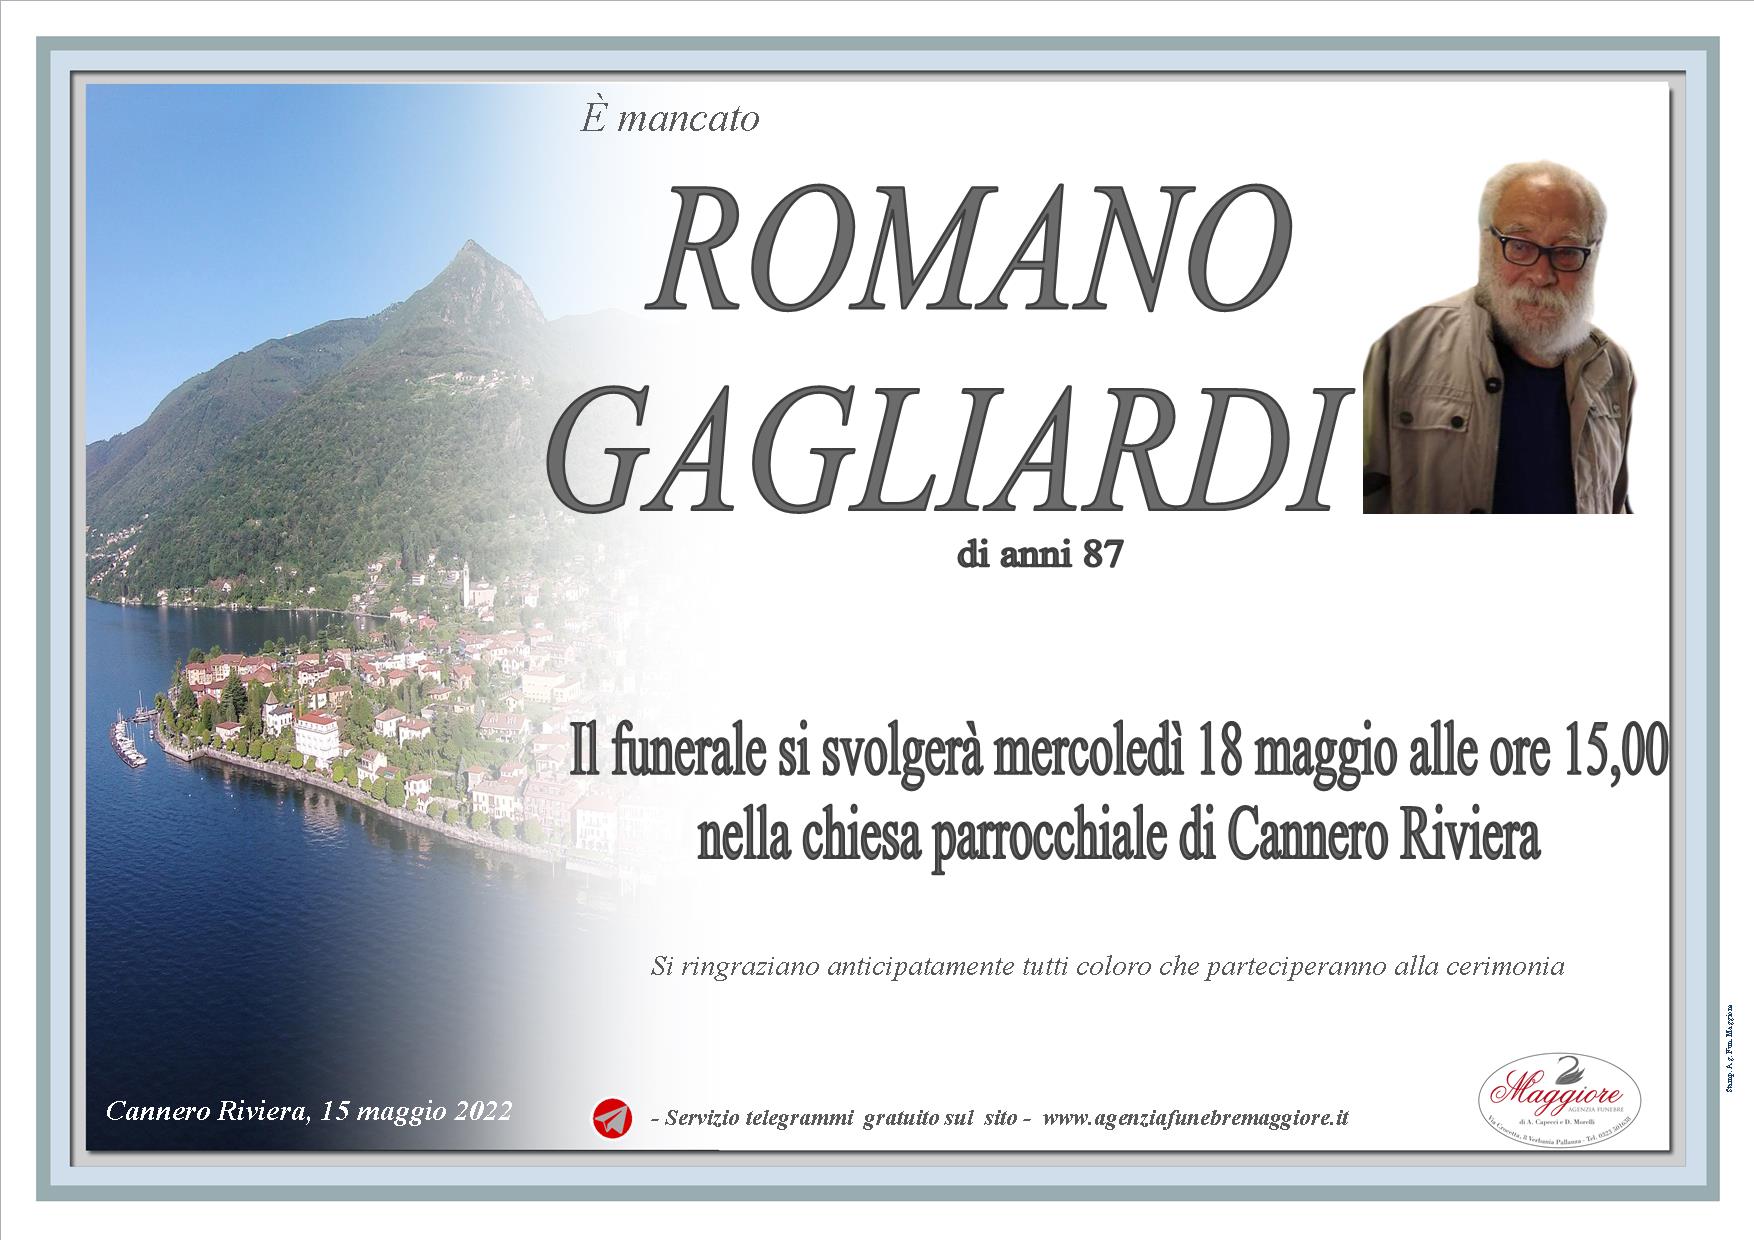 Romano Gagliardi